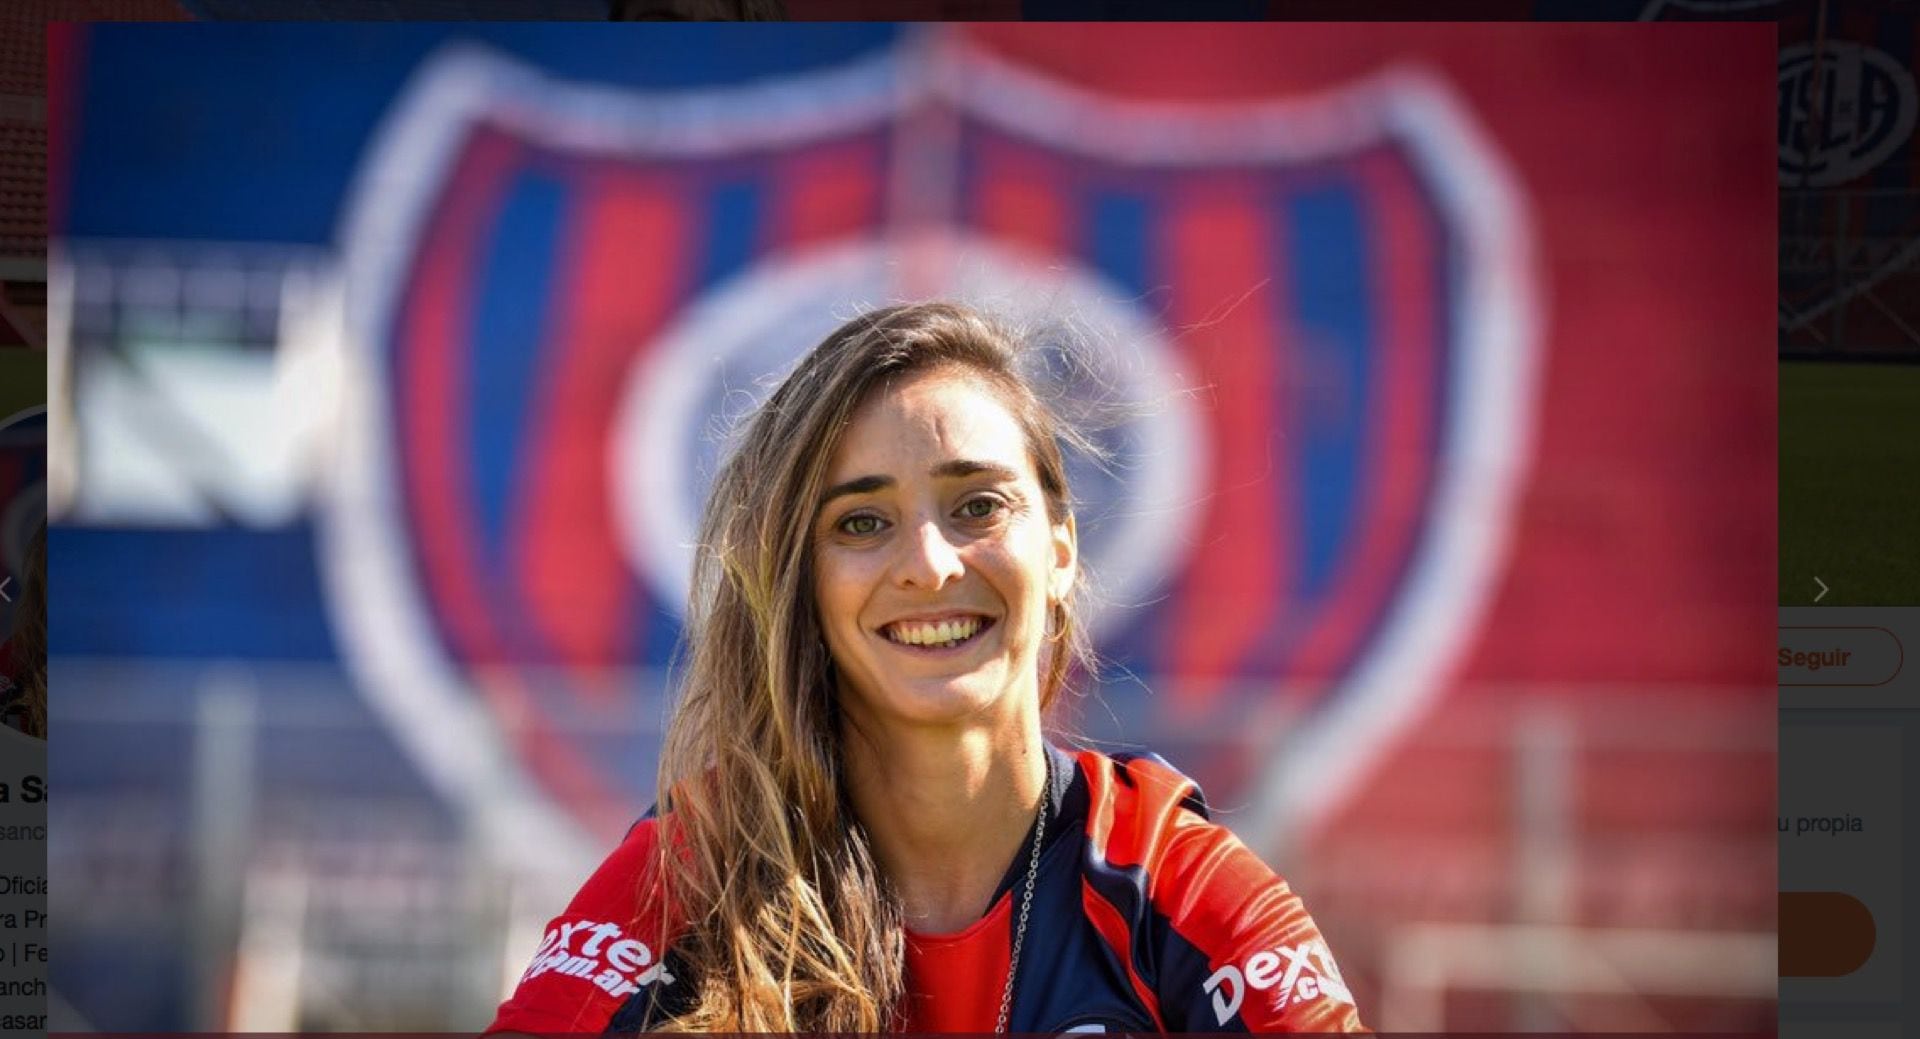 Macarena Sánchez, futbolista profesional de San Lorenzo, miembro del jurado del campeonato #GoldenTweet